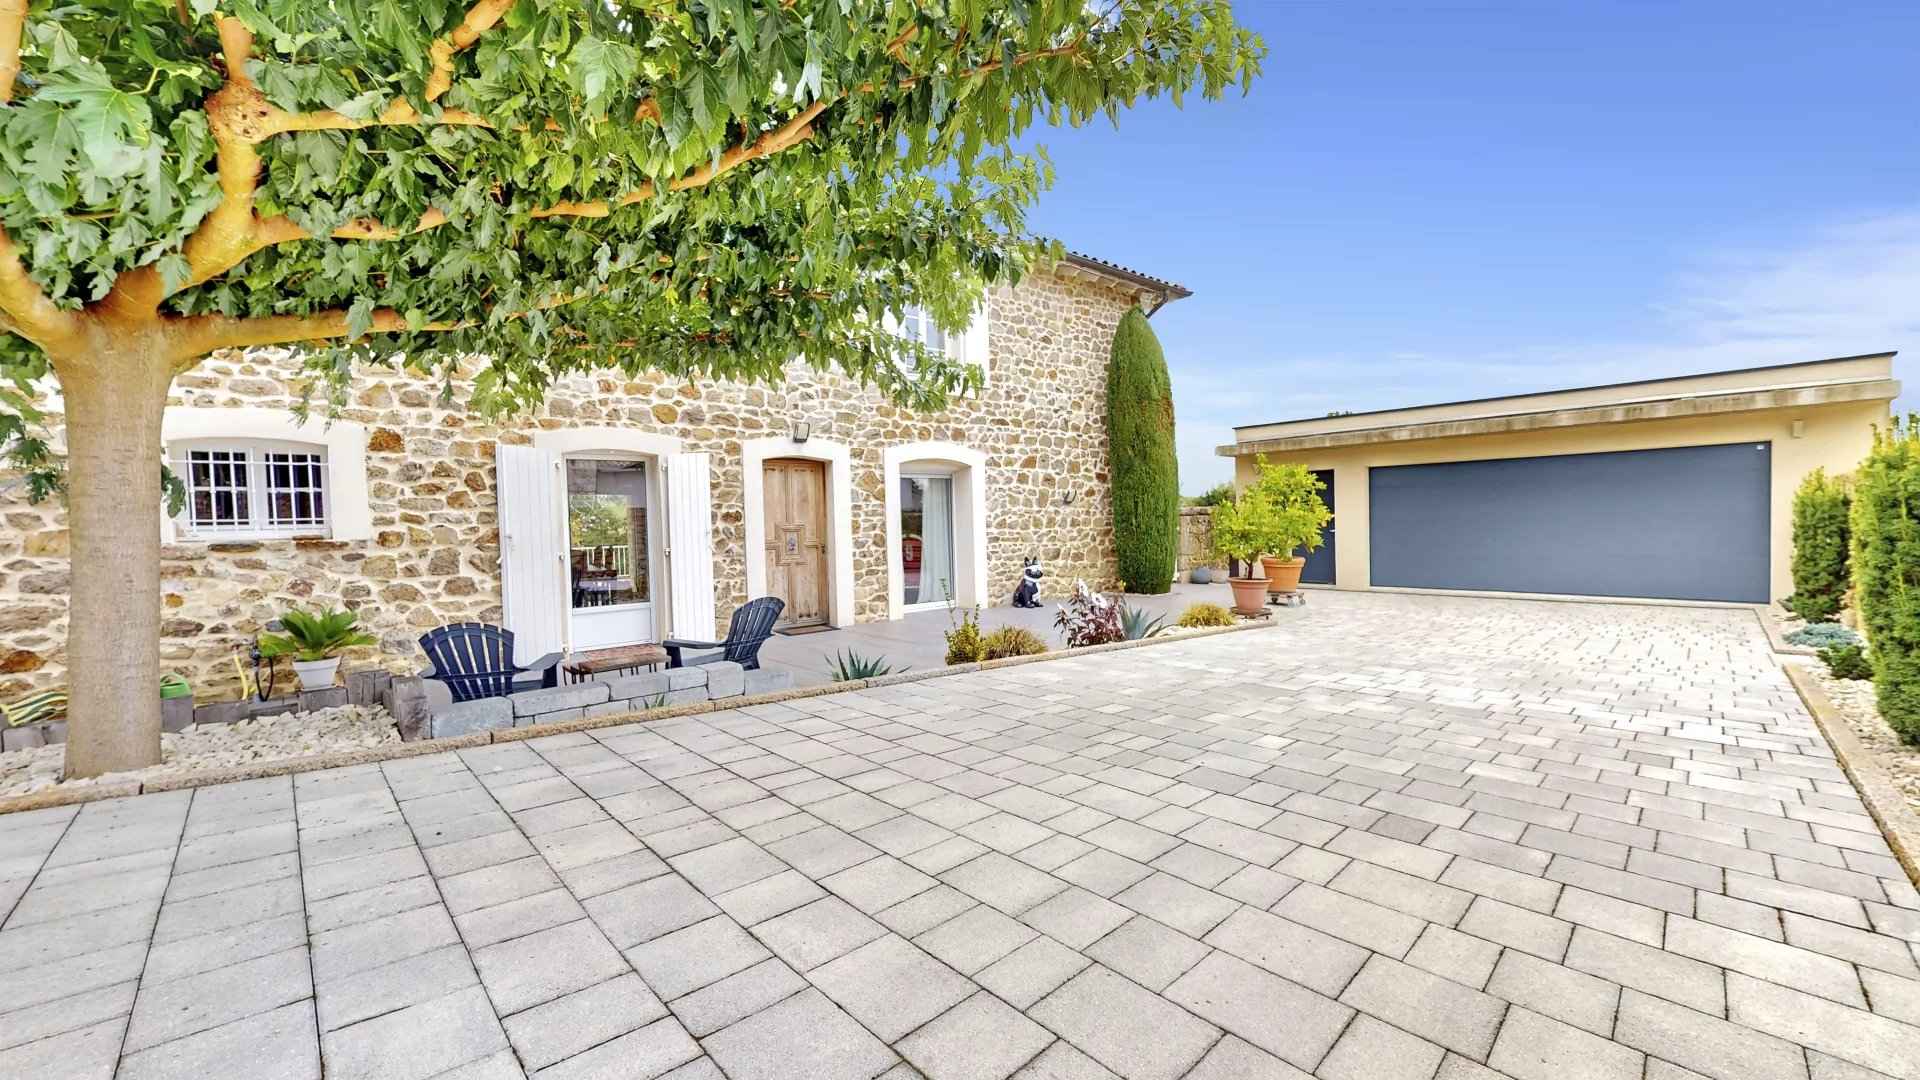 À vendre maison - Vernosc-lès-Annonay